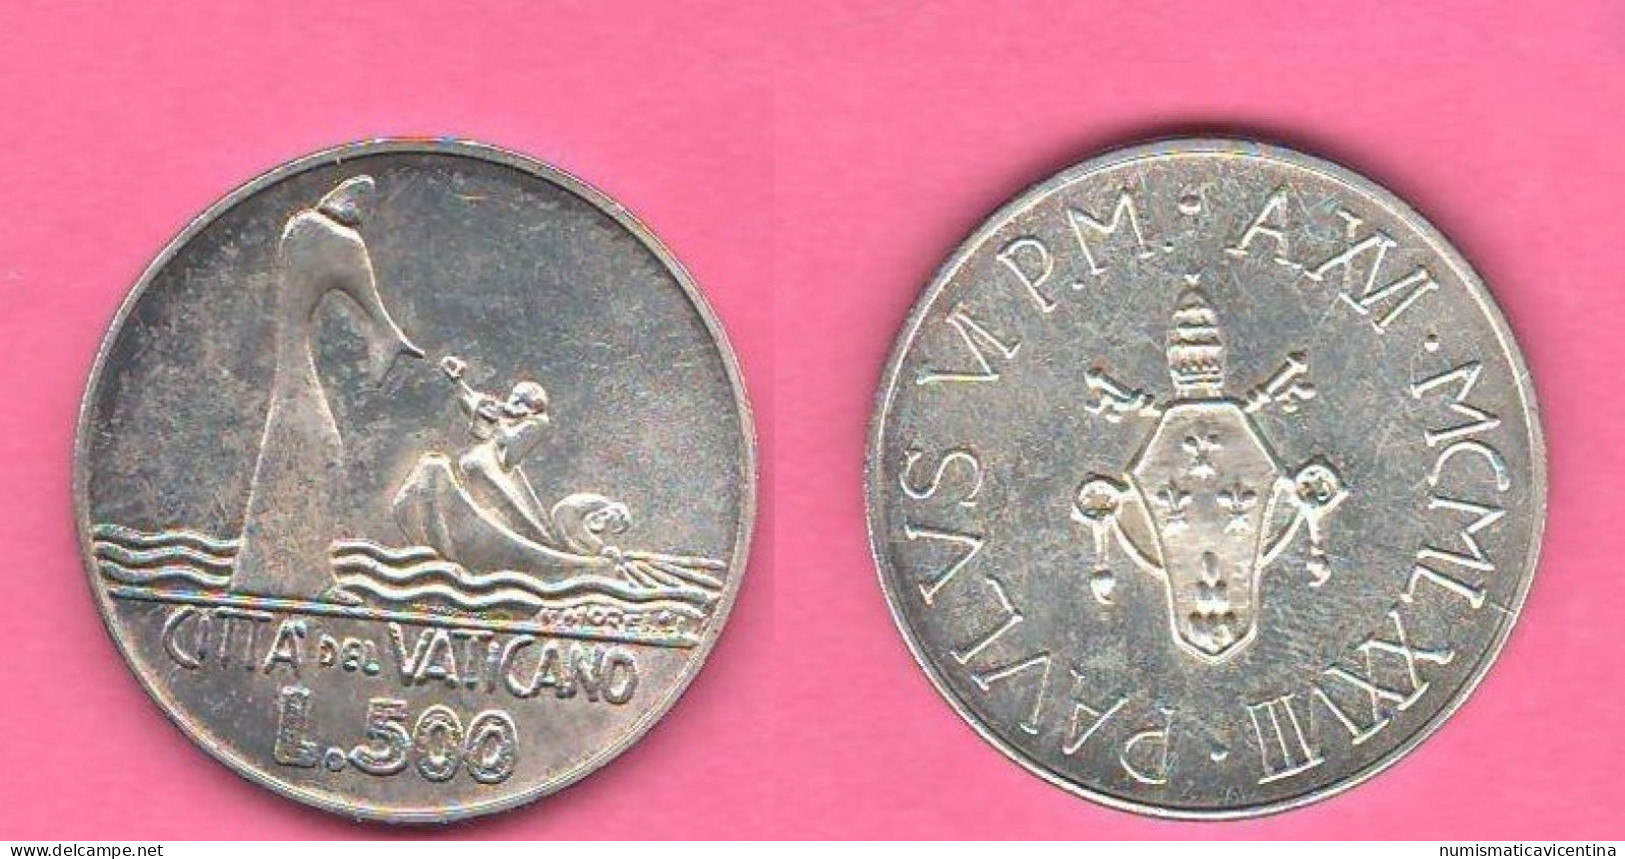 Vaticano 500 Lire 1978 Paolo VI° Anno XVI° Vatican City Silver Coin - Vaticaanstad